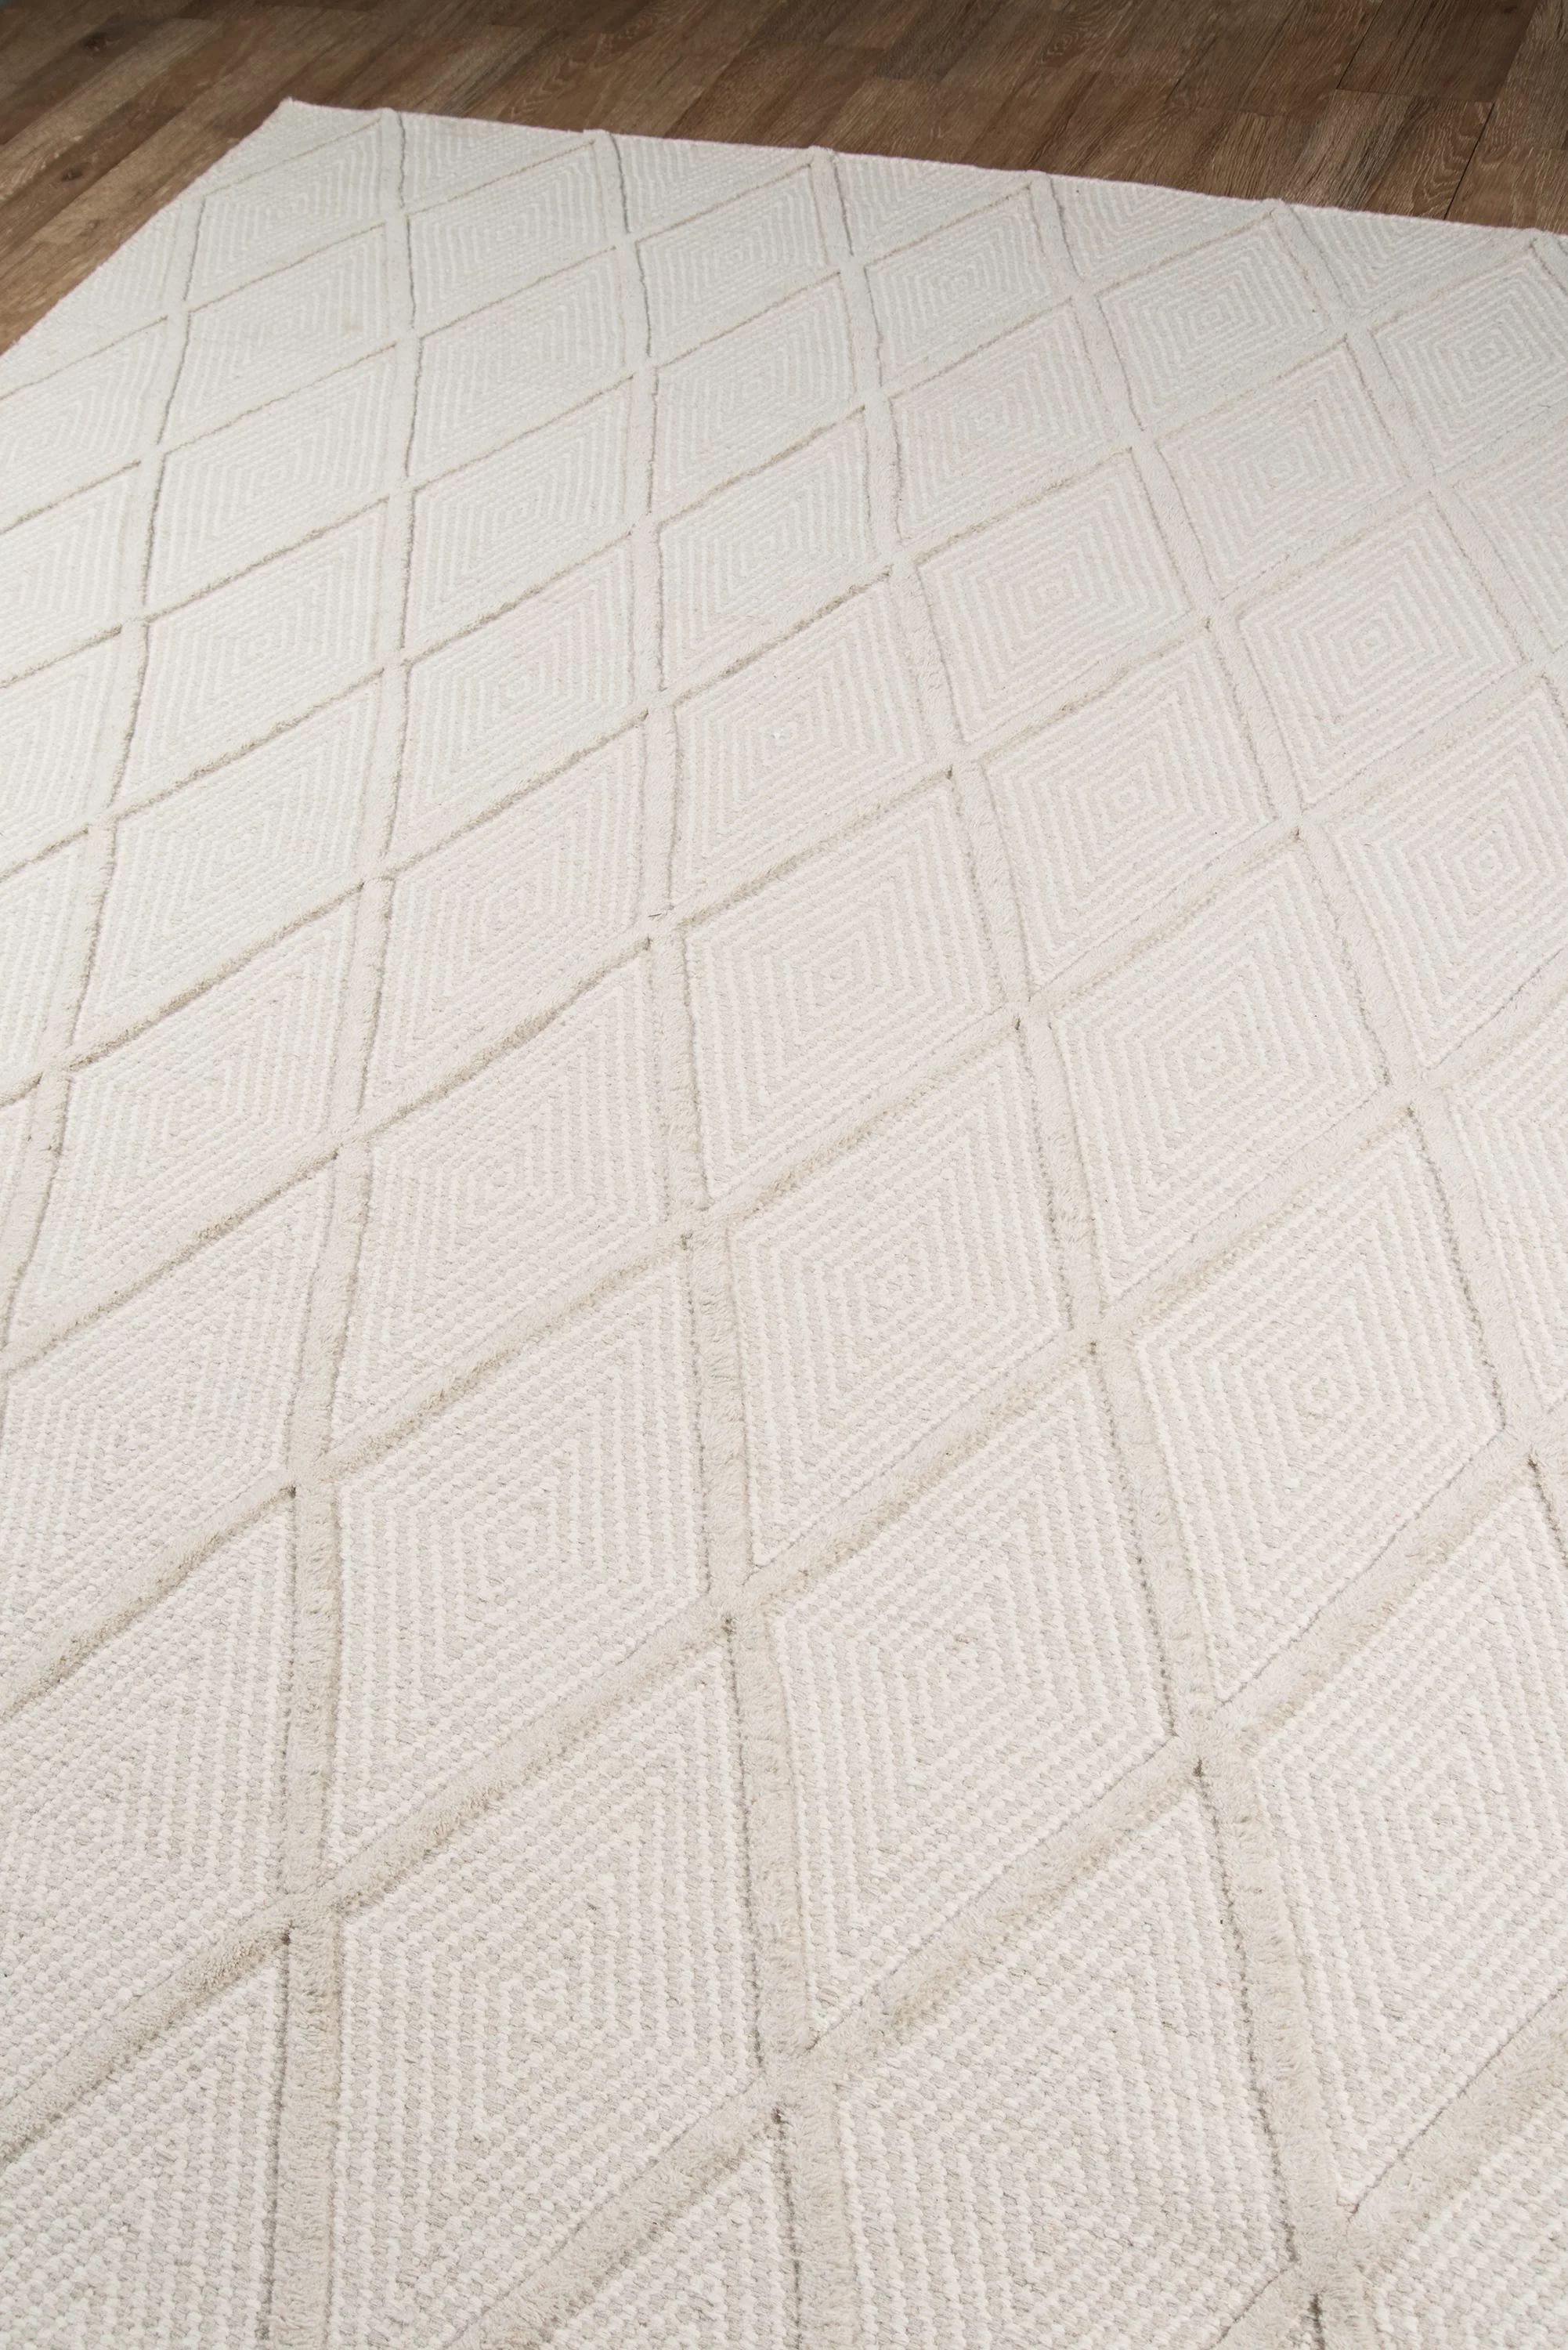 Langdon Geometric Handmade Flatweave Wool Beige Area Rug | Wayfair Professional